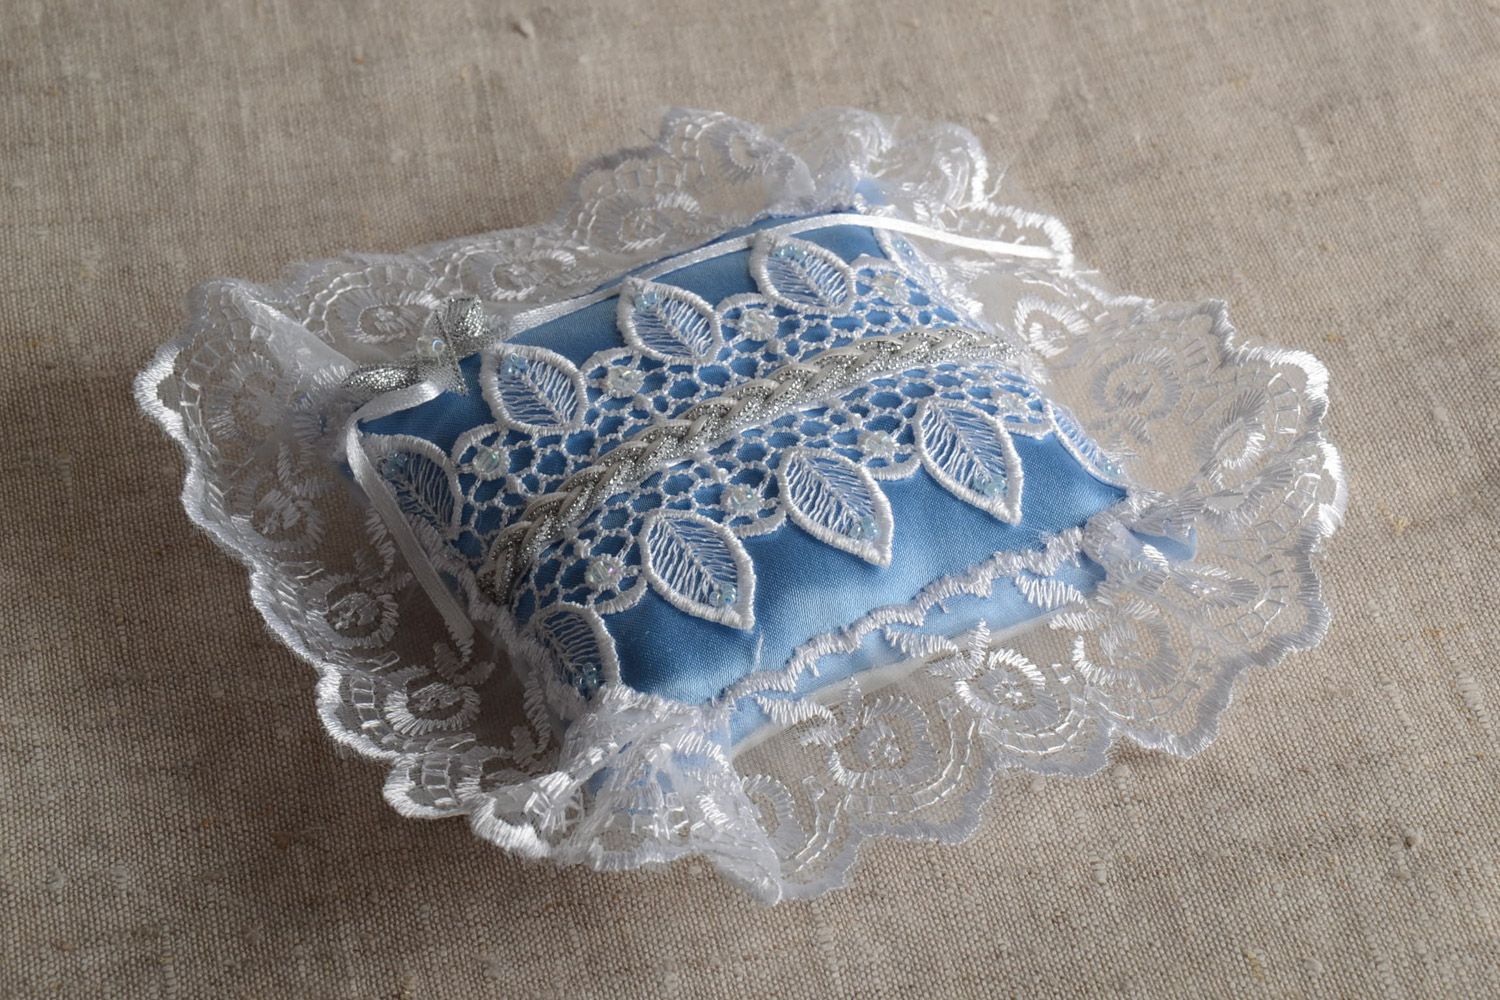 Свадебная подушечка для колец из ткани с кружевом голубая красивая ручной работы фото 1